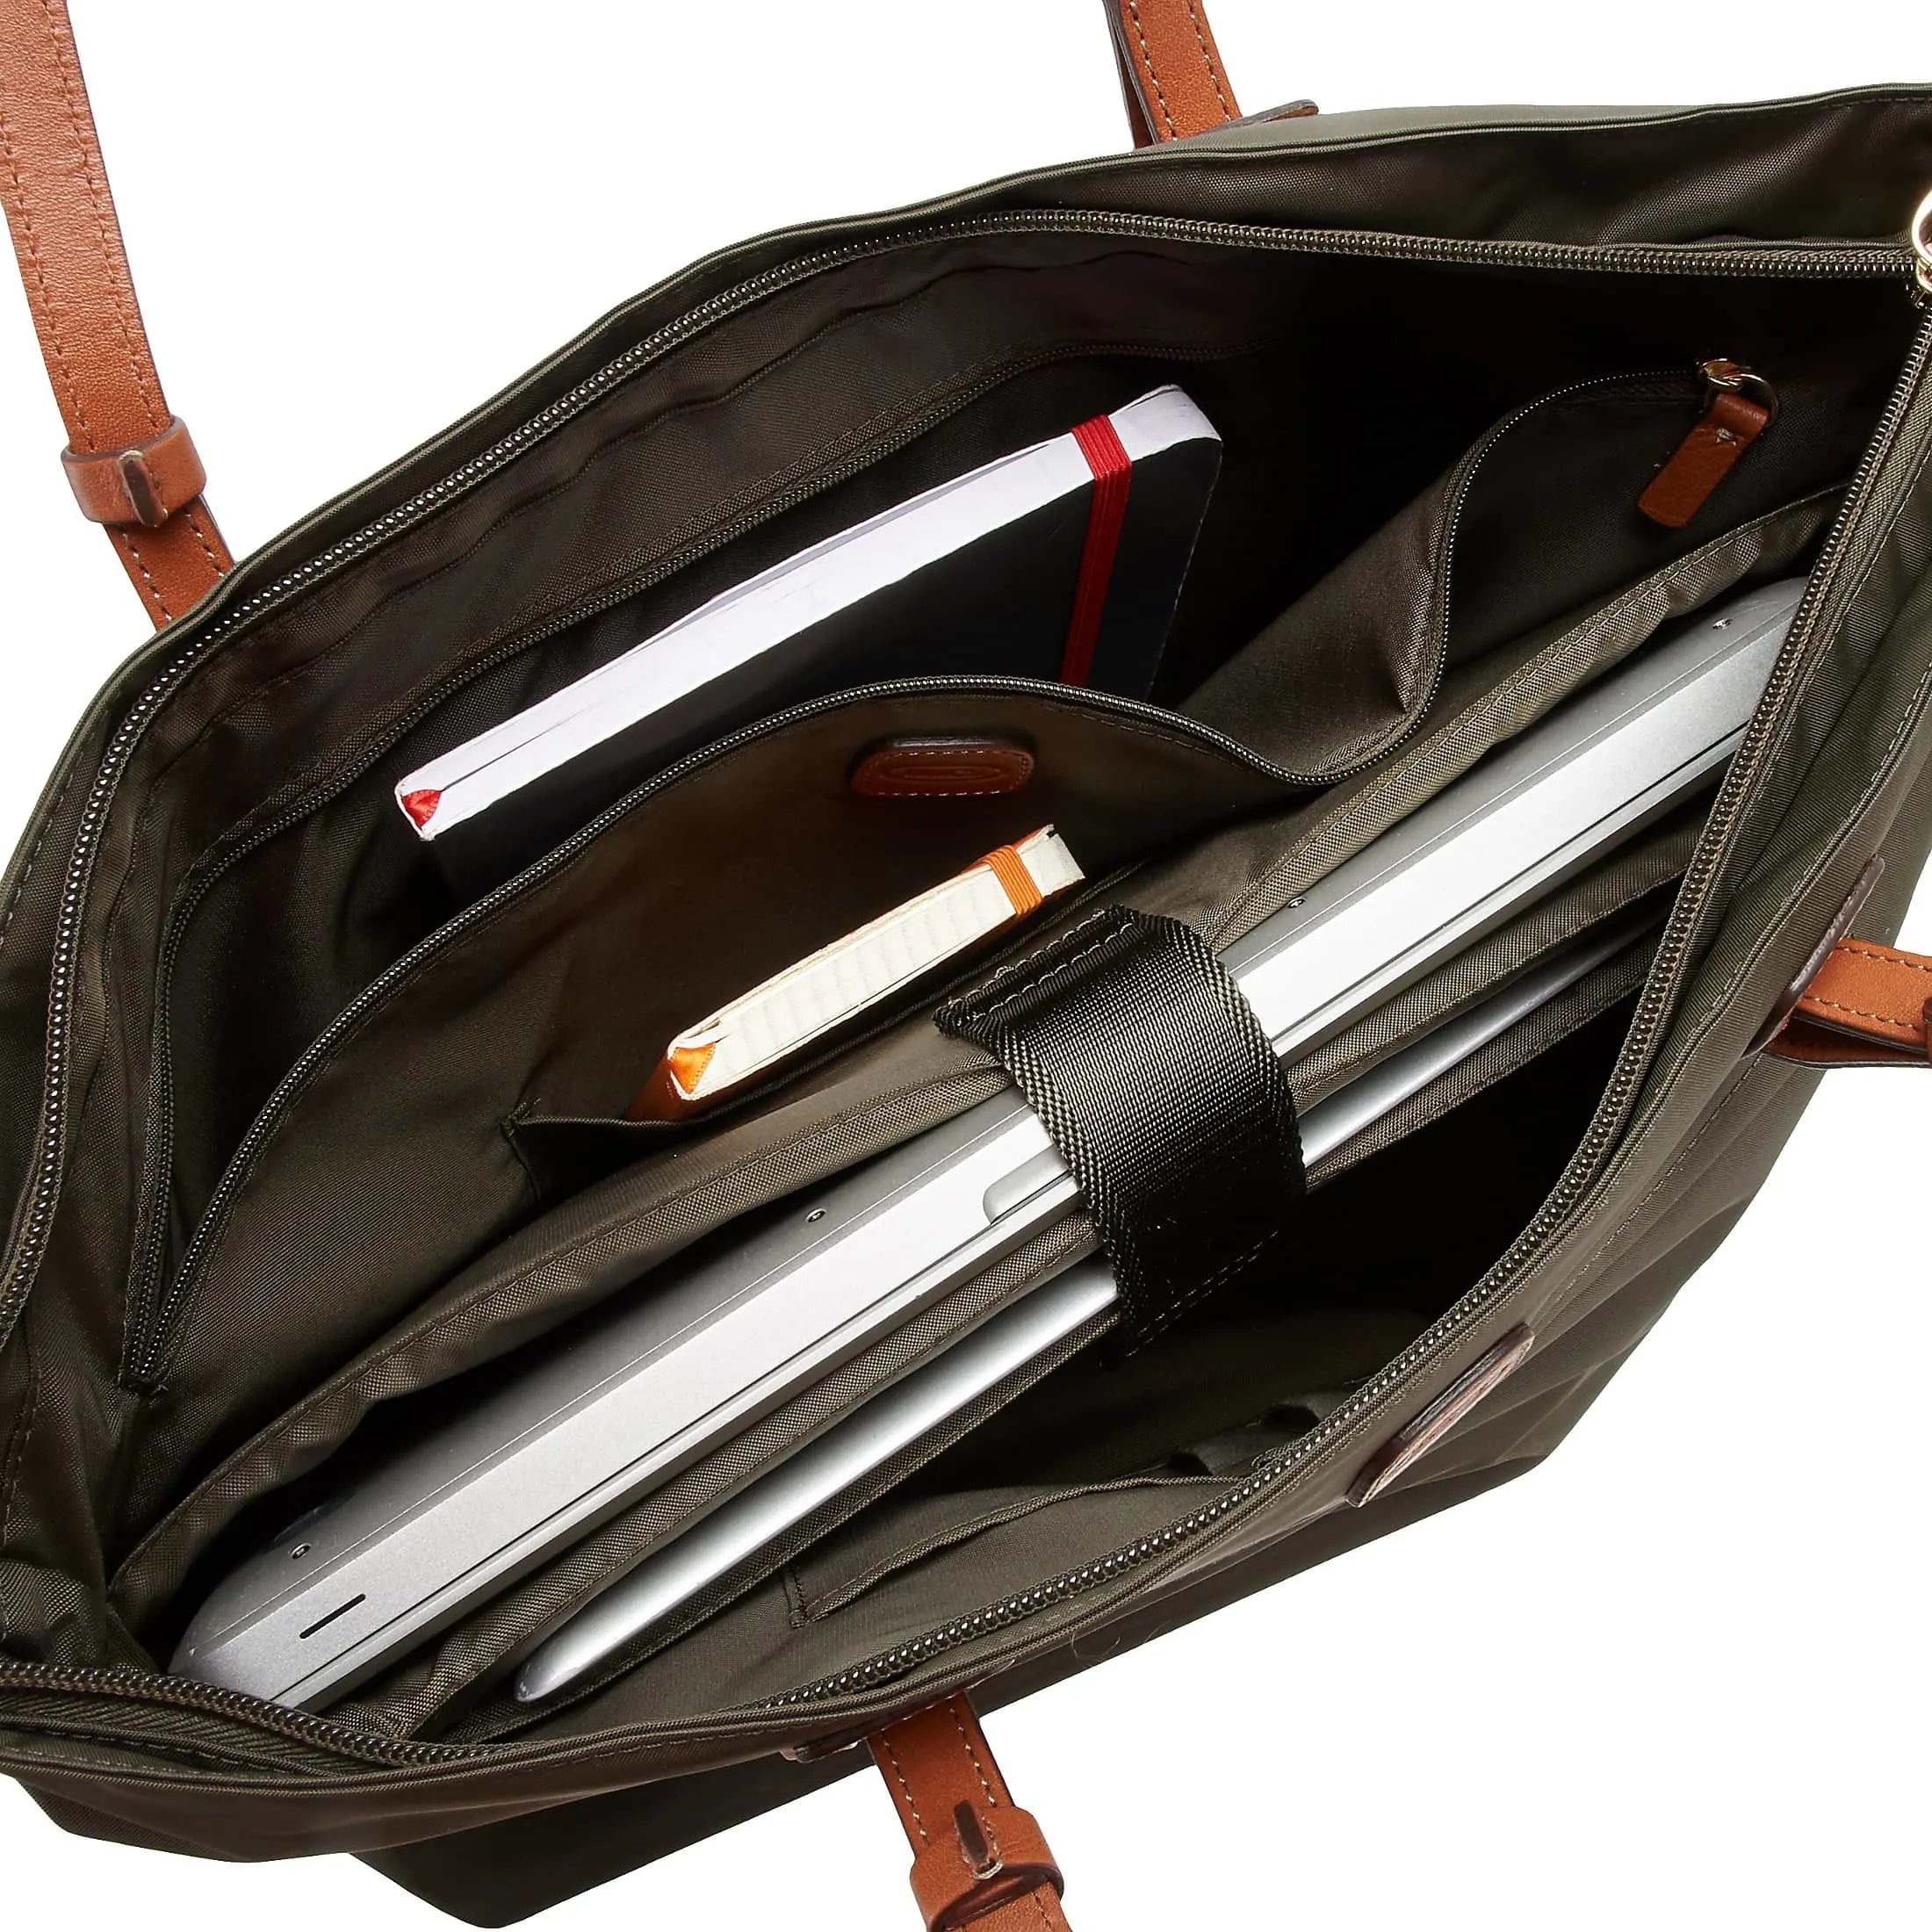 Brics X-Travel handbag 38 cm - olive